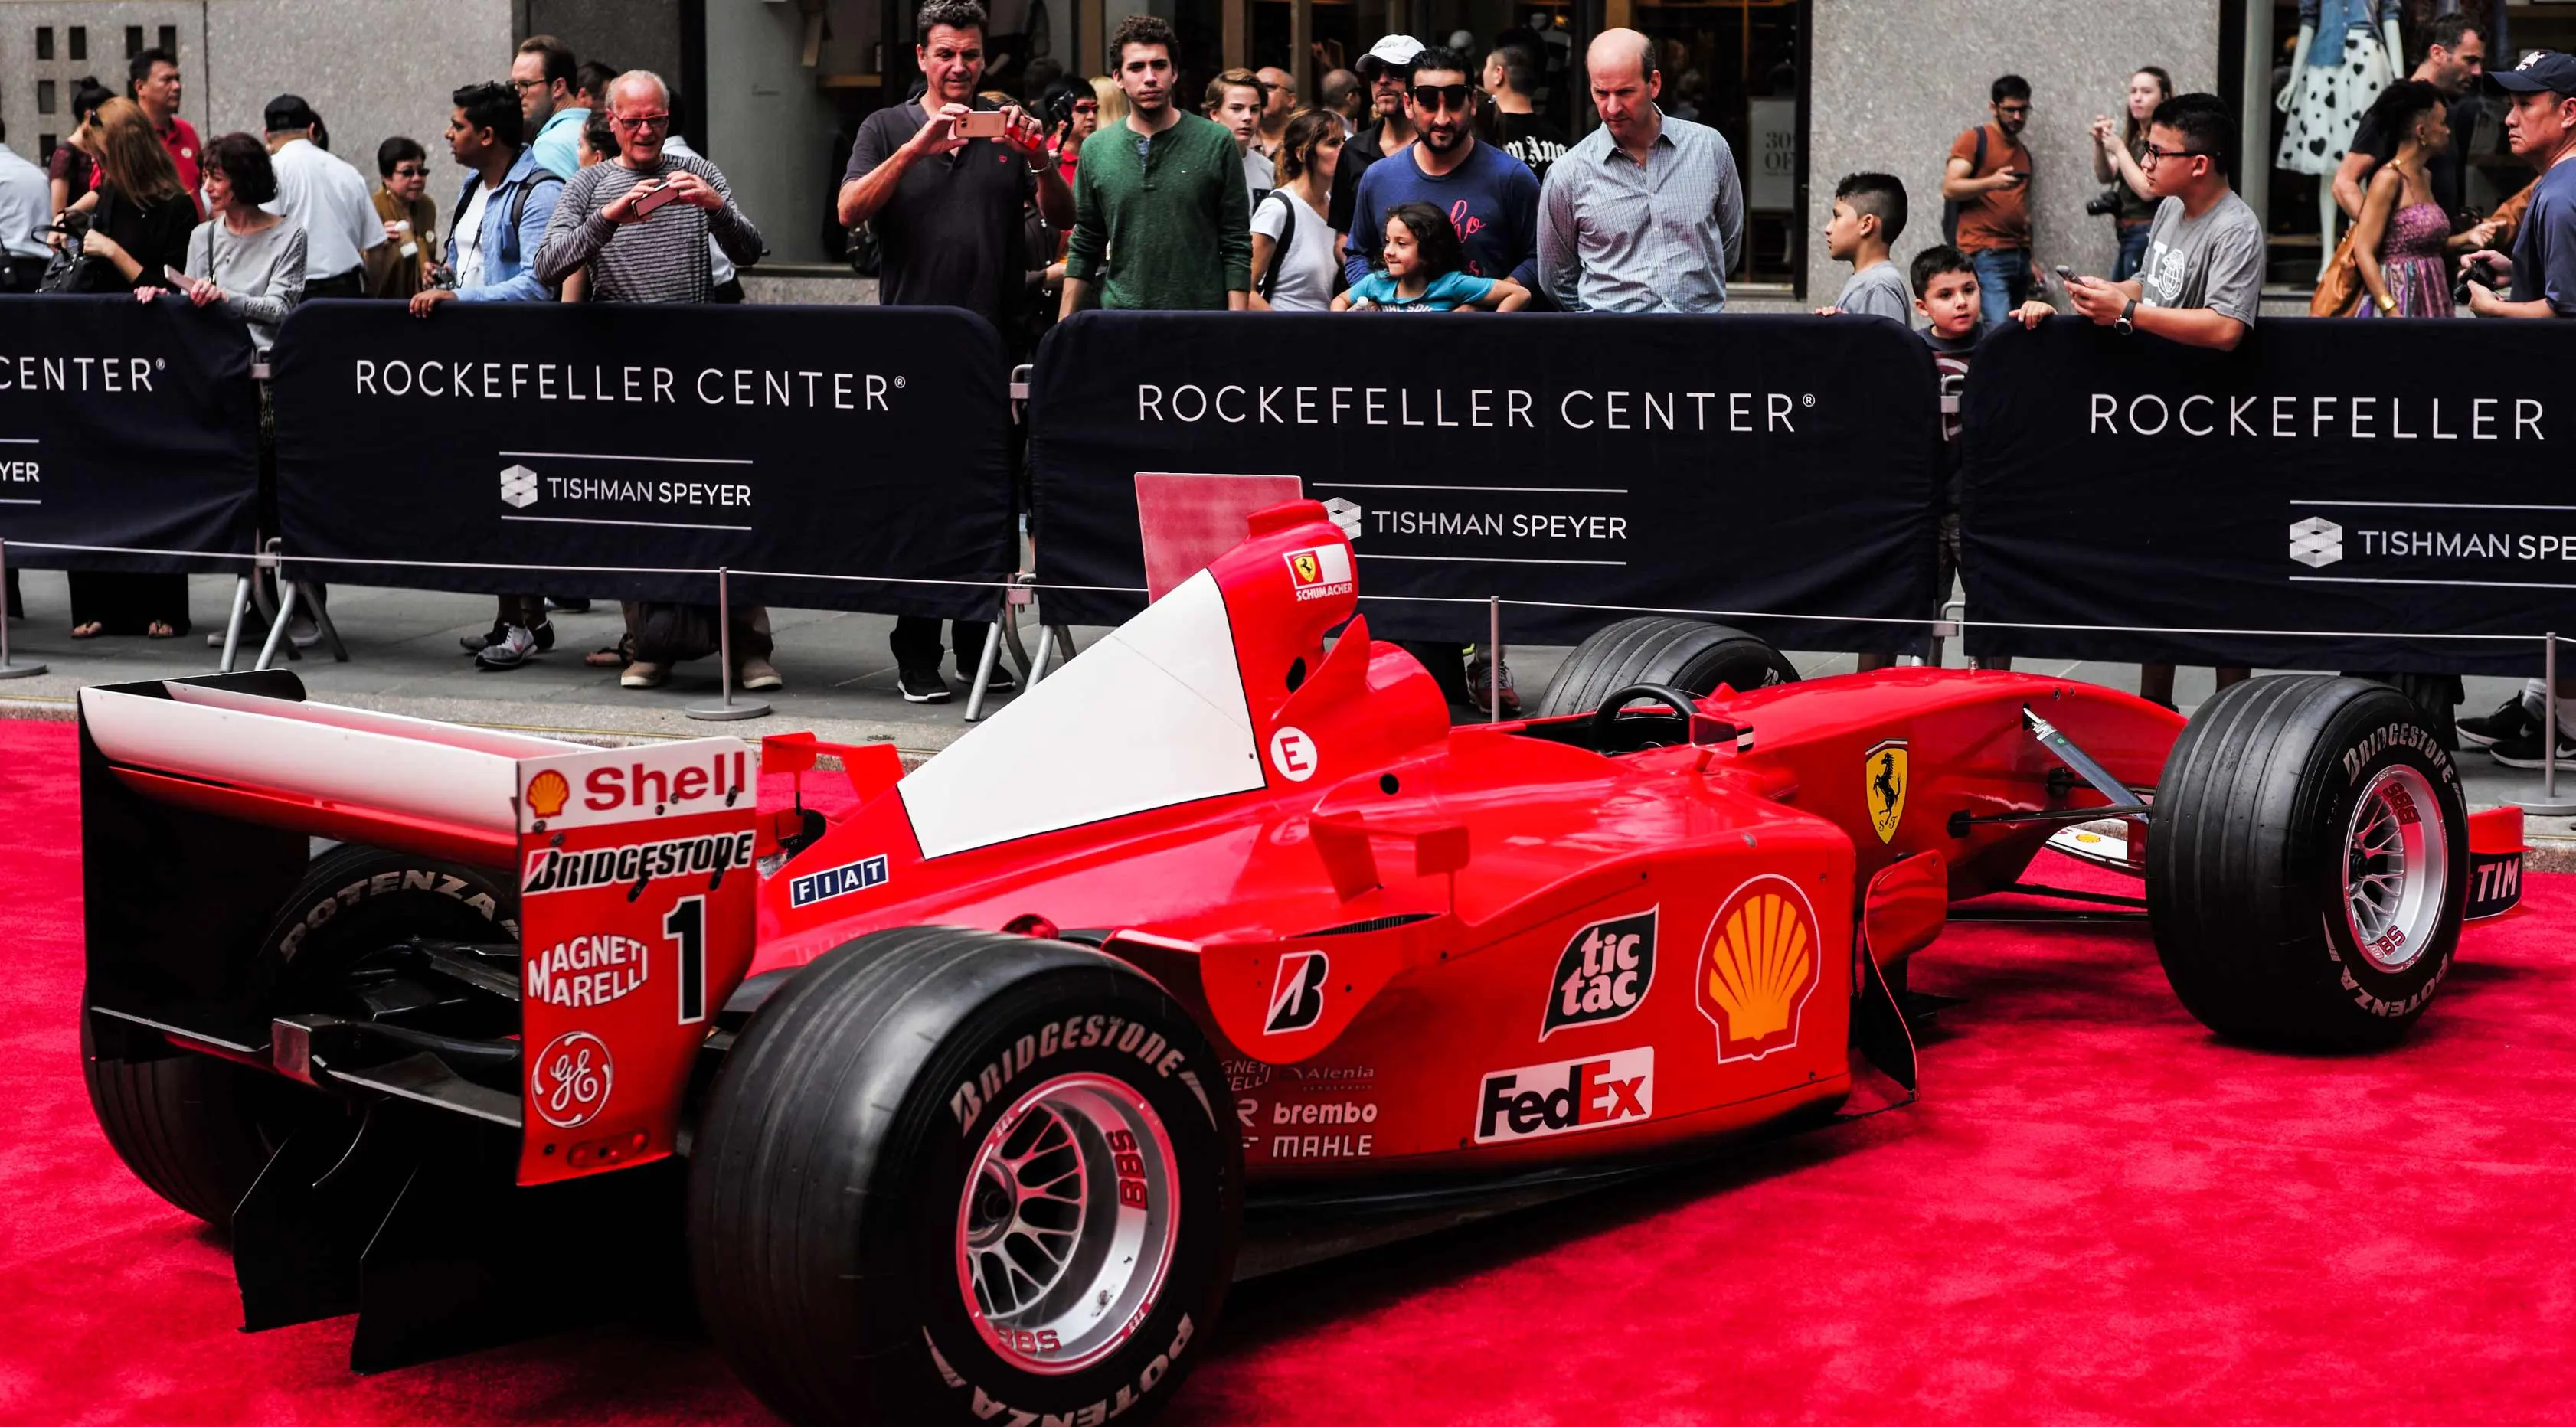 Pengunjung melihat mobil mantan pembalap Ferrari F1 dari Jerman, Michael Schumacher saat dipamerkan di perayaan ulang tahun Ferrari ke-70 di Rockefeller Plaza, New York, AS (8/10). (AFP Photo/Jewel Samad)